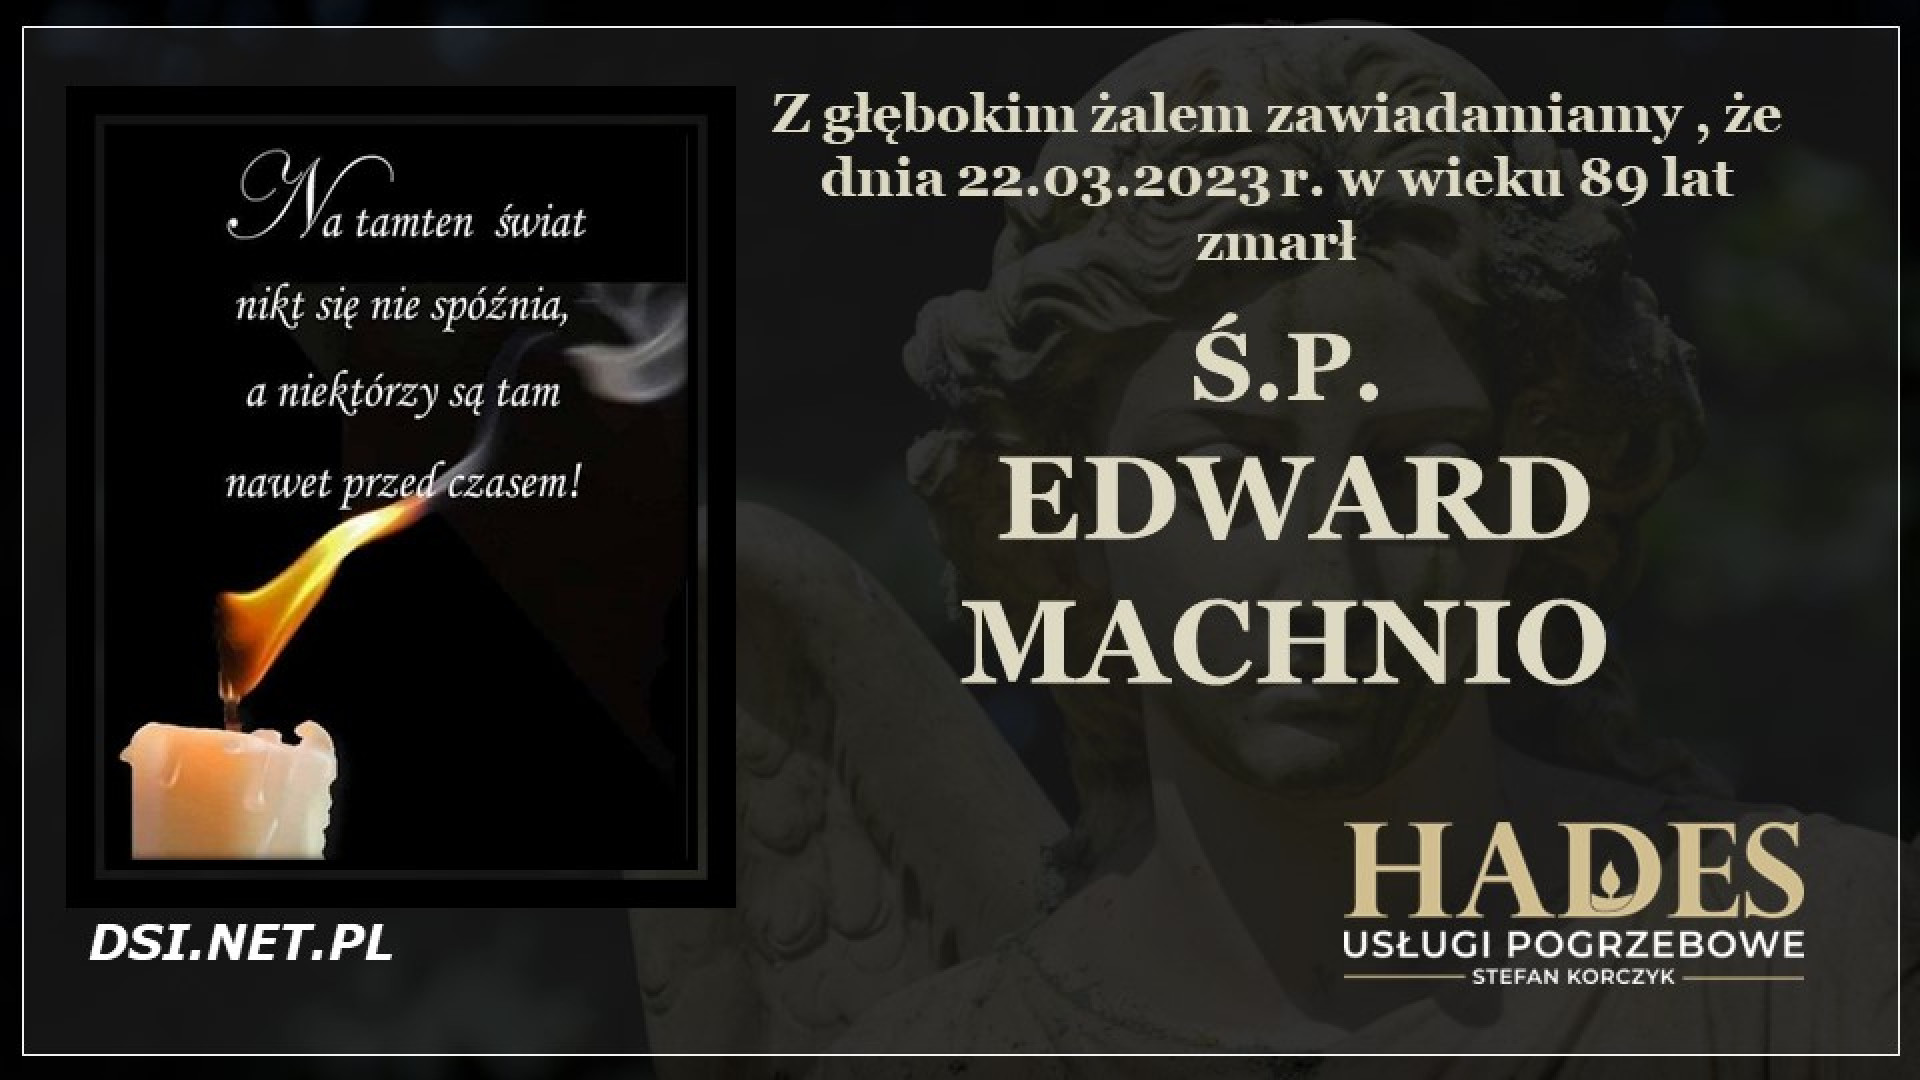 Ś.P. Edward Machnio